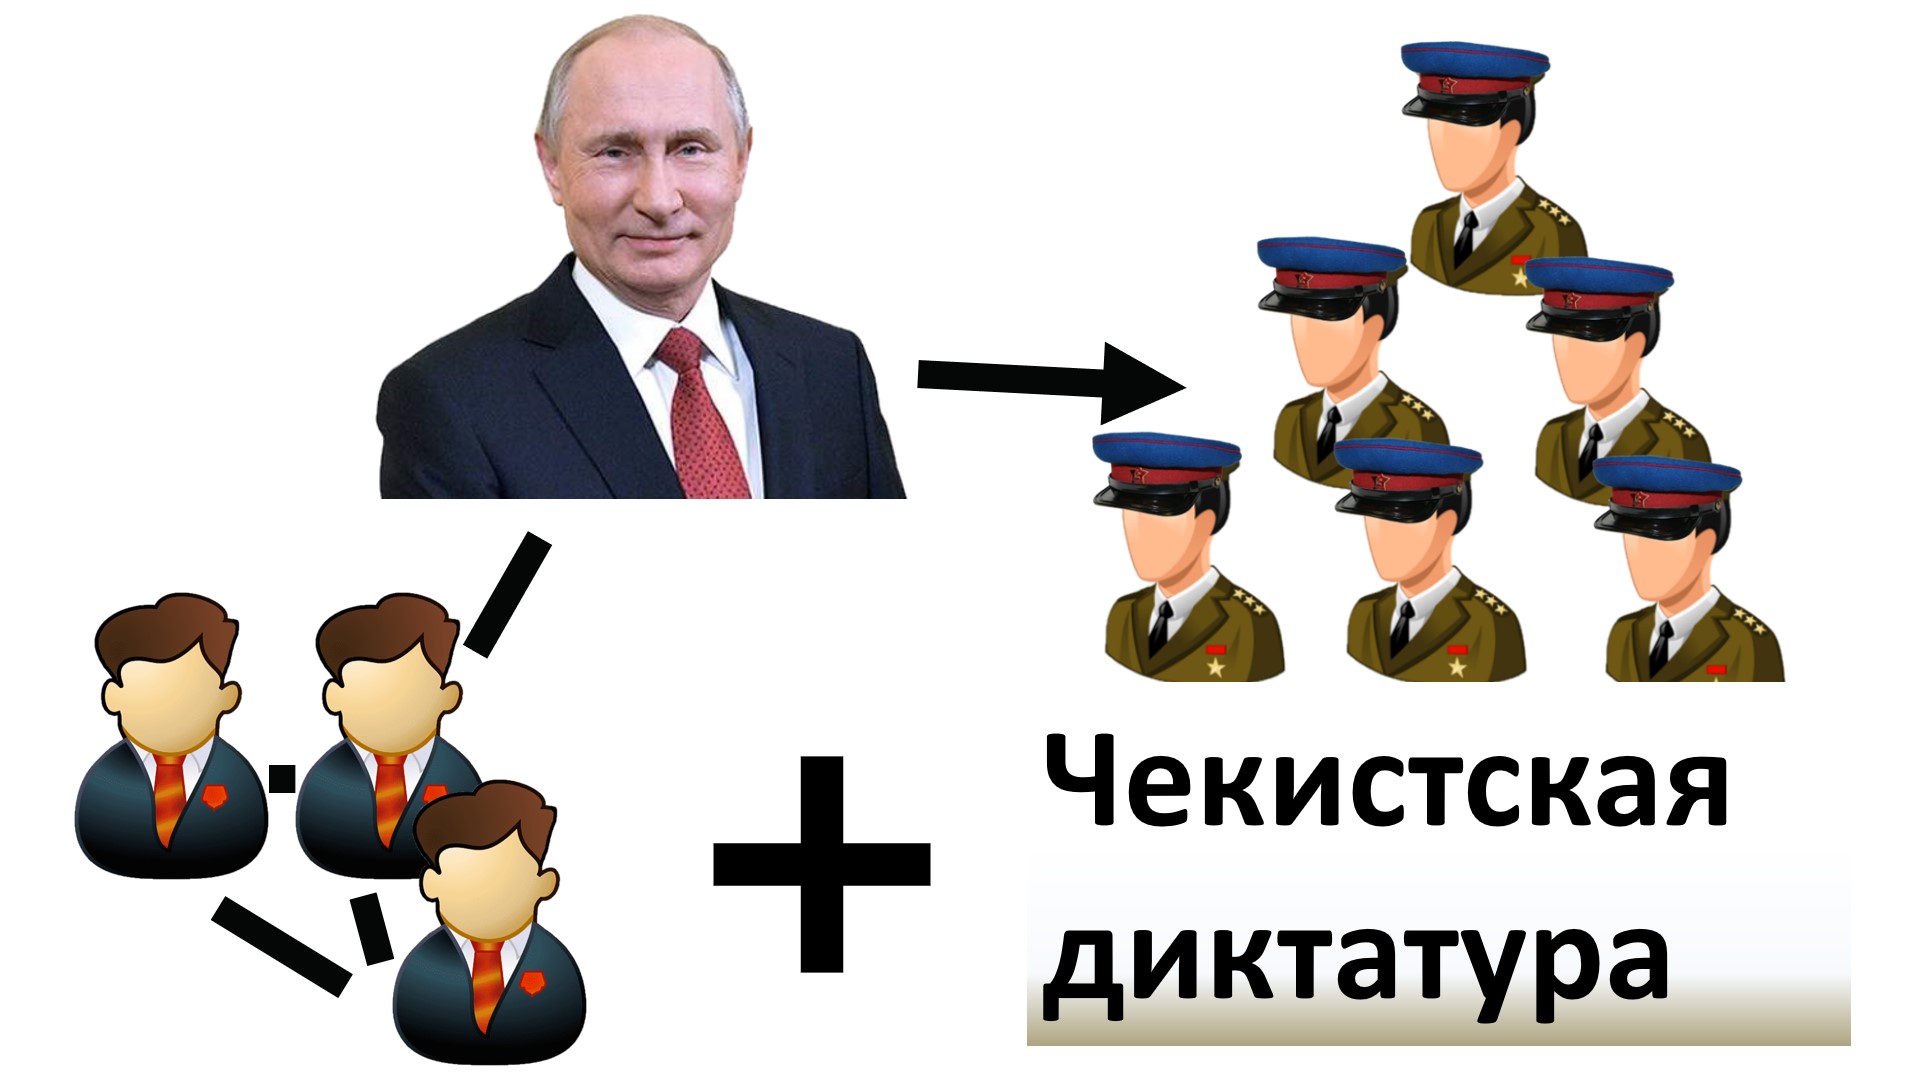 Путинская политическая система. Как выглядит и что в ней вообще путинского.